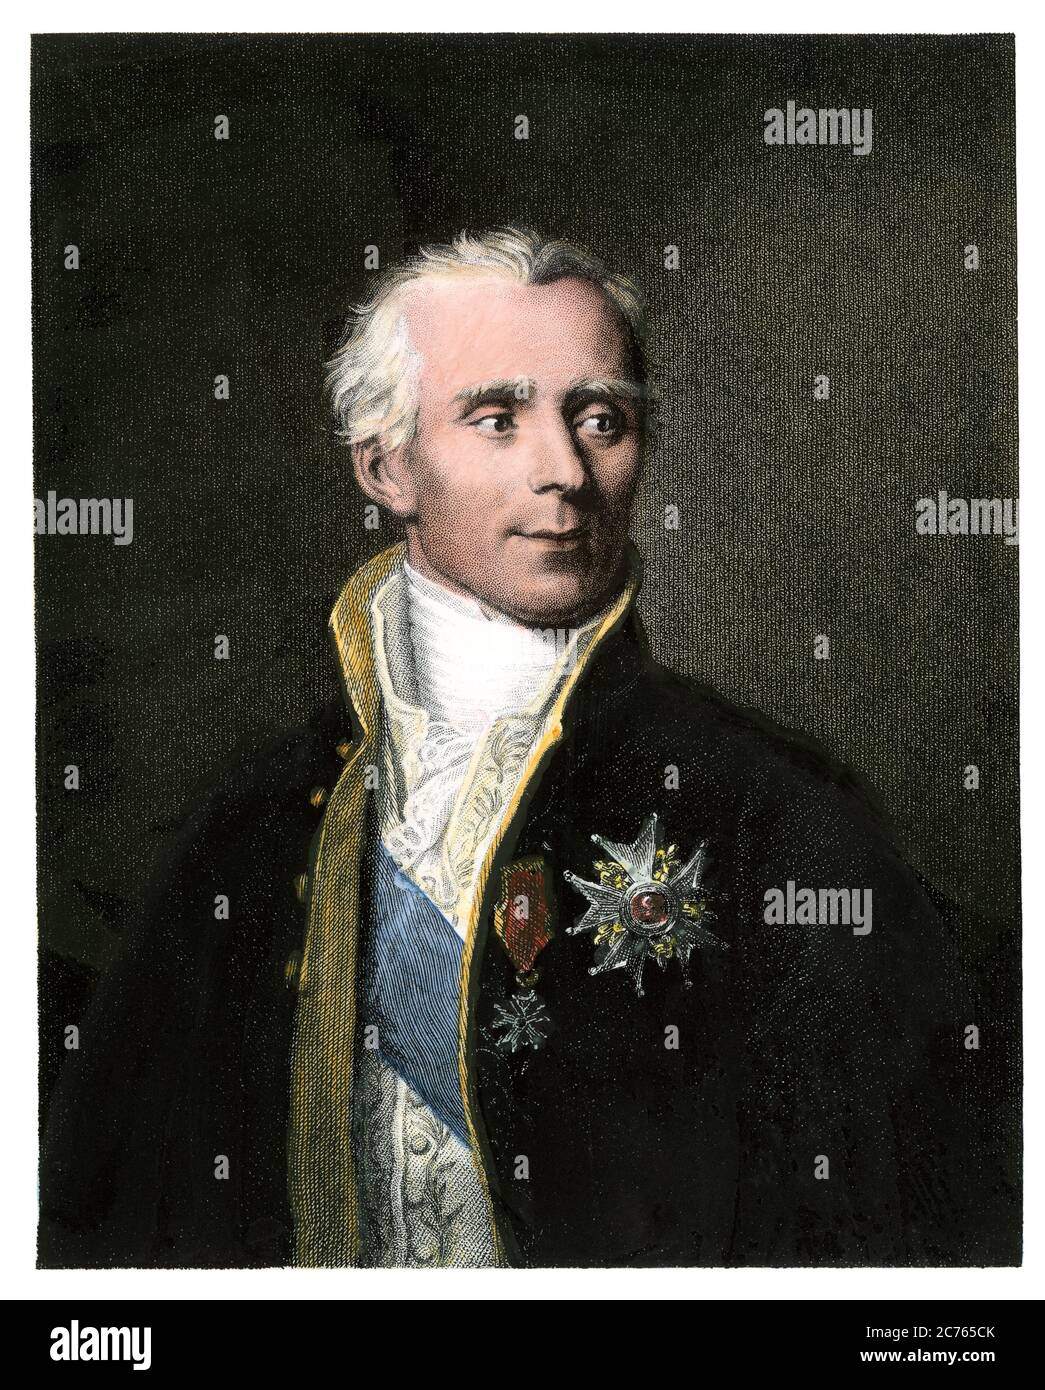 Pierre-Simon, marchese di Laplace, matematico francese. Incisione in acciaio colorata a mano Foto Stock